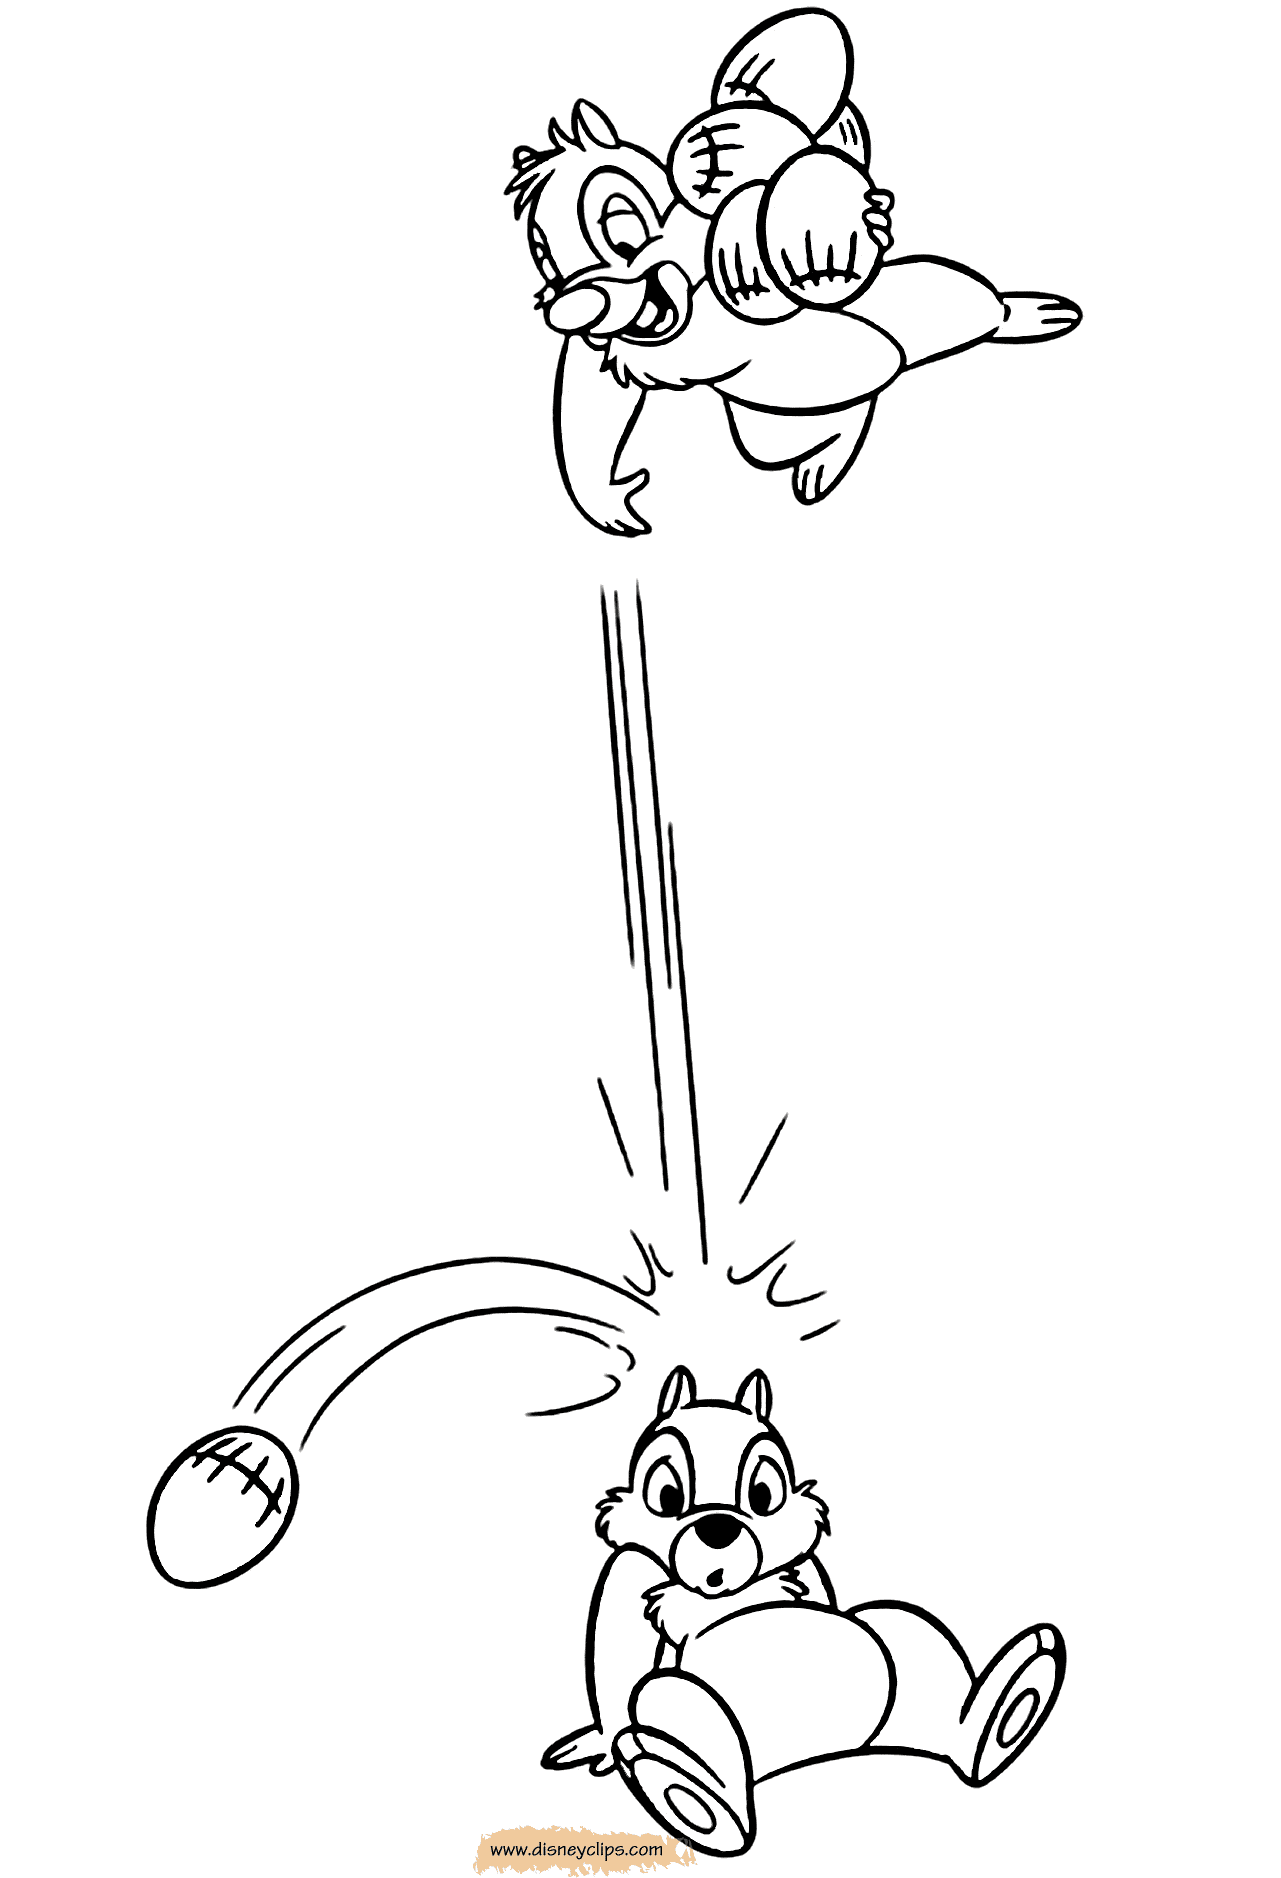 Дейл бросает орех в Чипа из мультфильма "Чип и Дейл спешат на помощь"